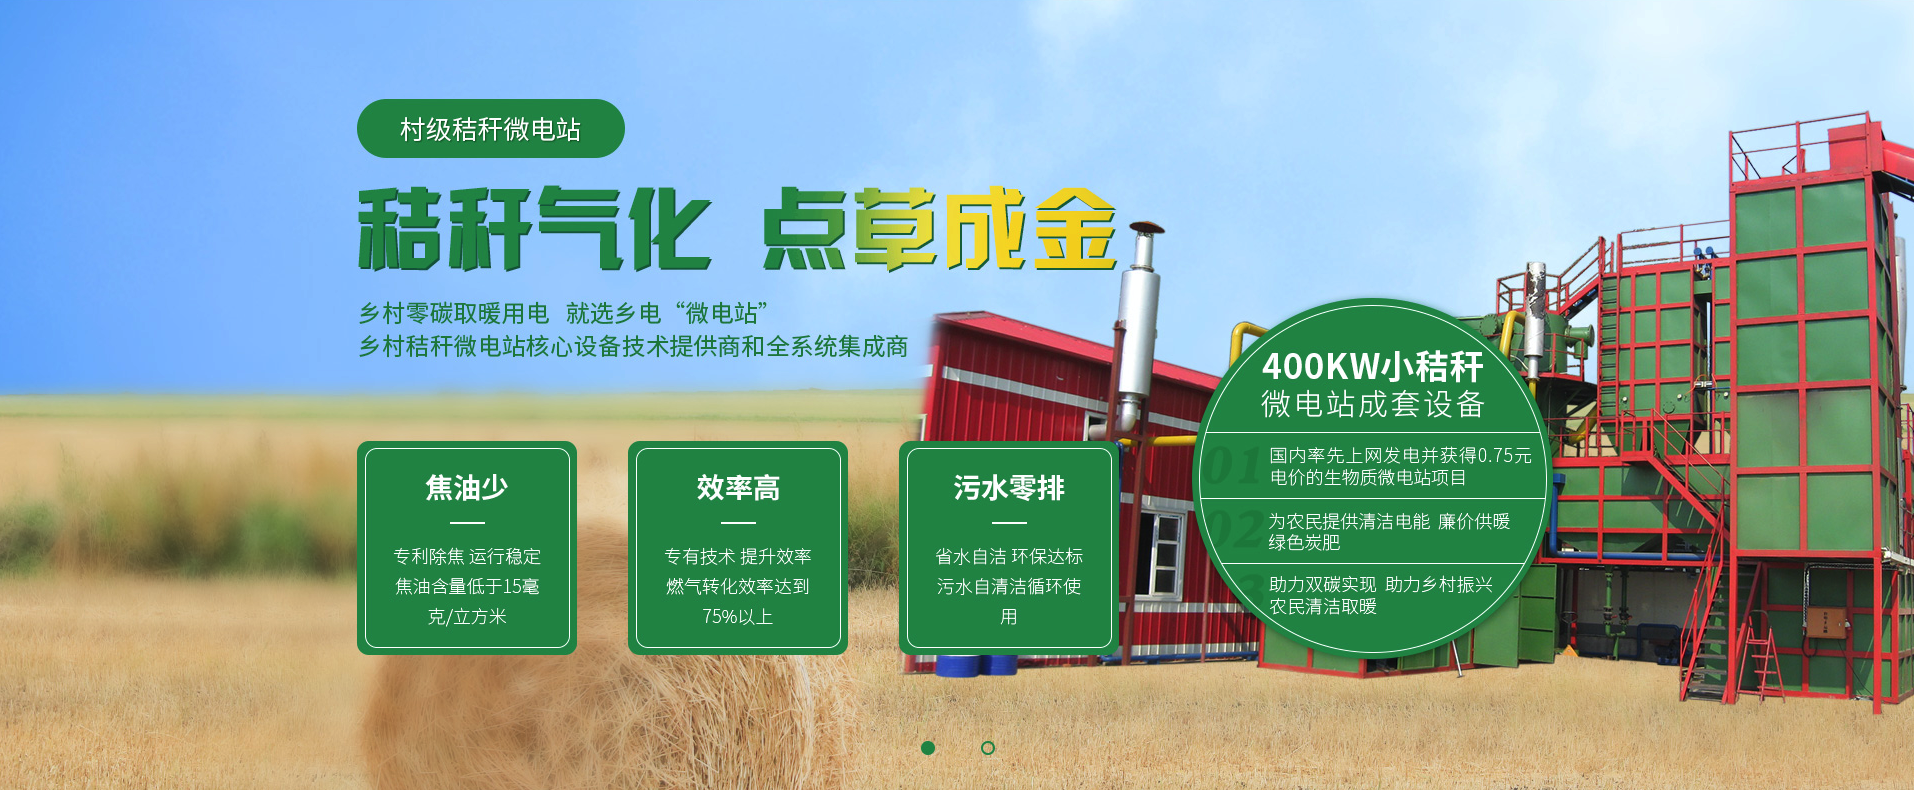 焦油少效率高污水零排放 北京乡电秸秆微电站助力国家双碳目标